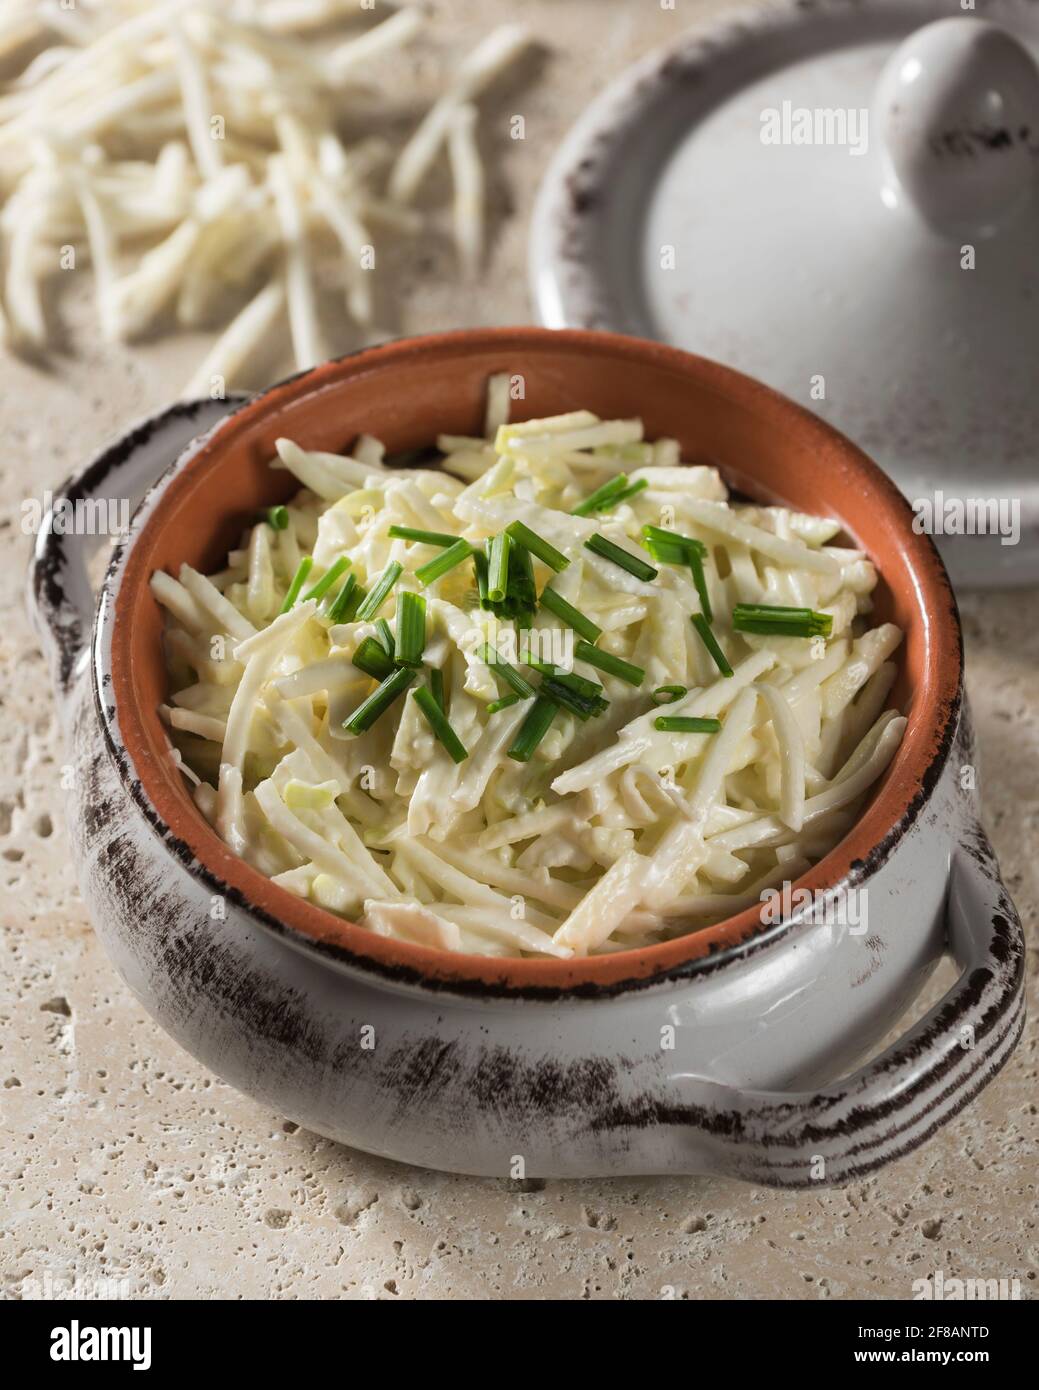 Rémoulade de céleri-rave. Salade de racines de céleri dans de la mayonnaise à la moutarde. Banque D'Images